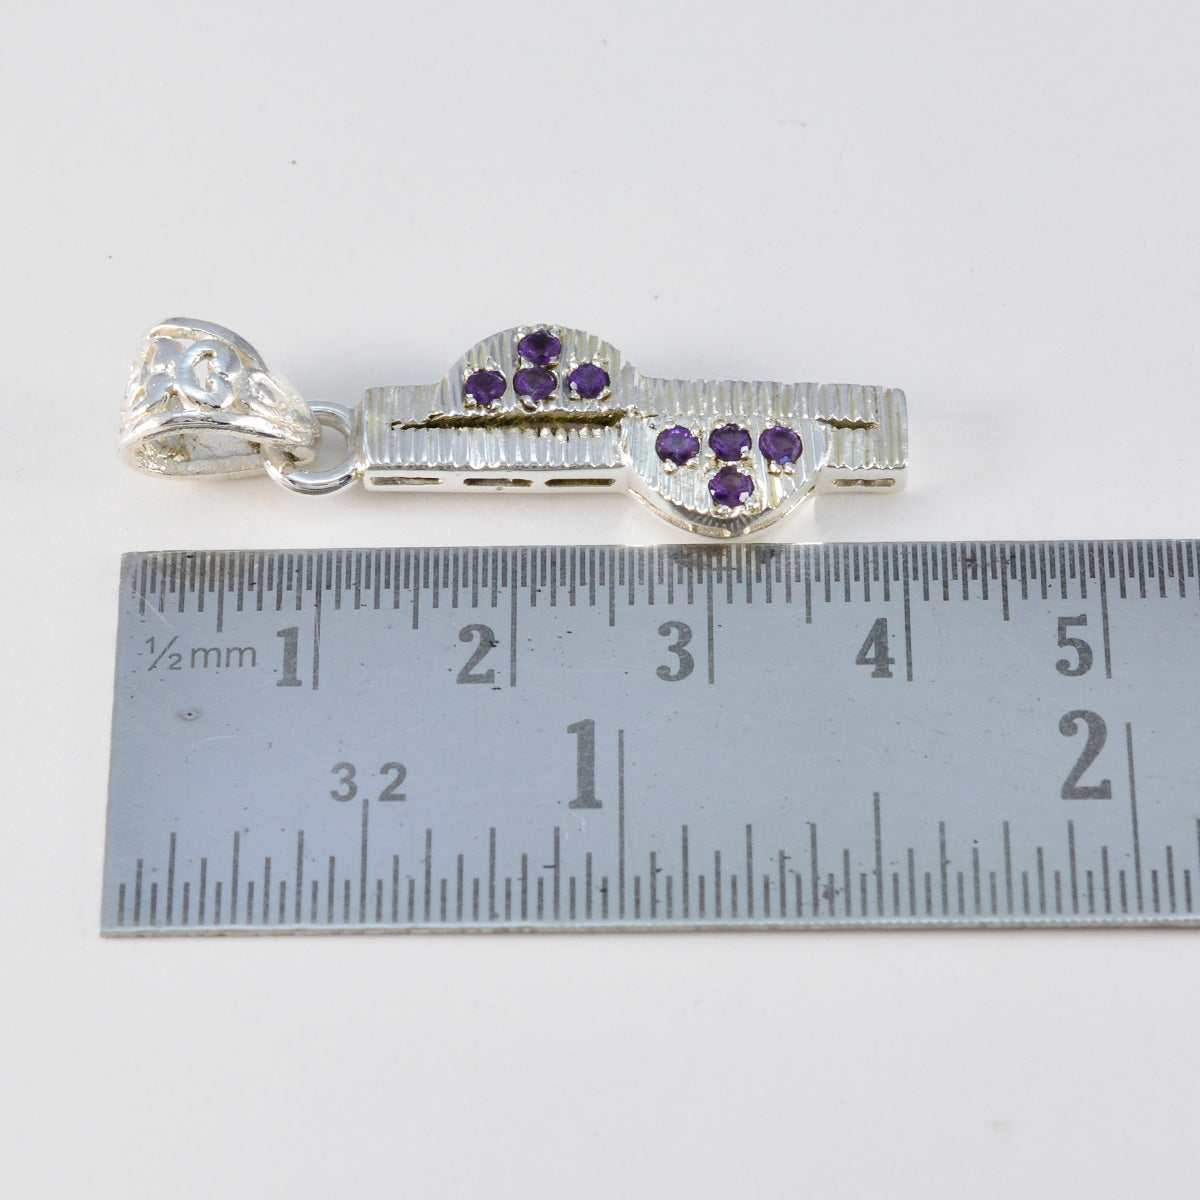 Riyo gemas naturales redondas facetadas amatista púrpura colgante de plata regalo para compromiso